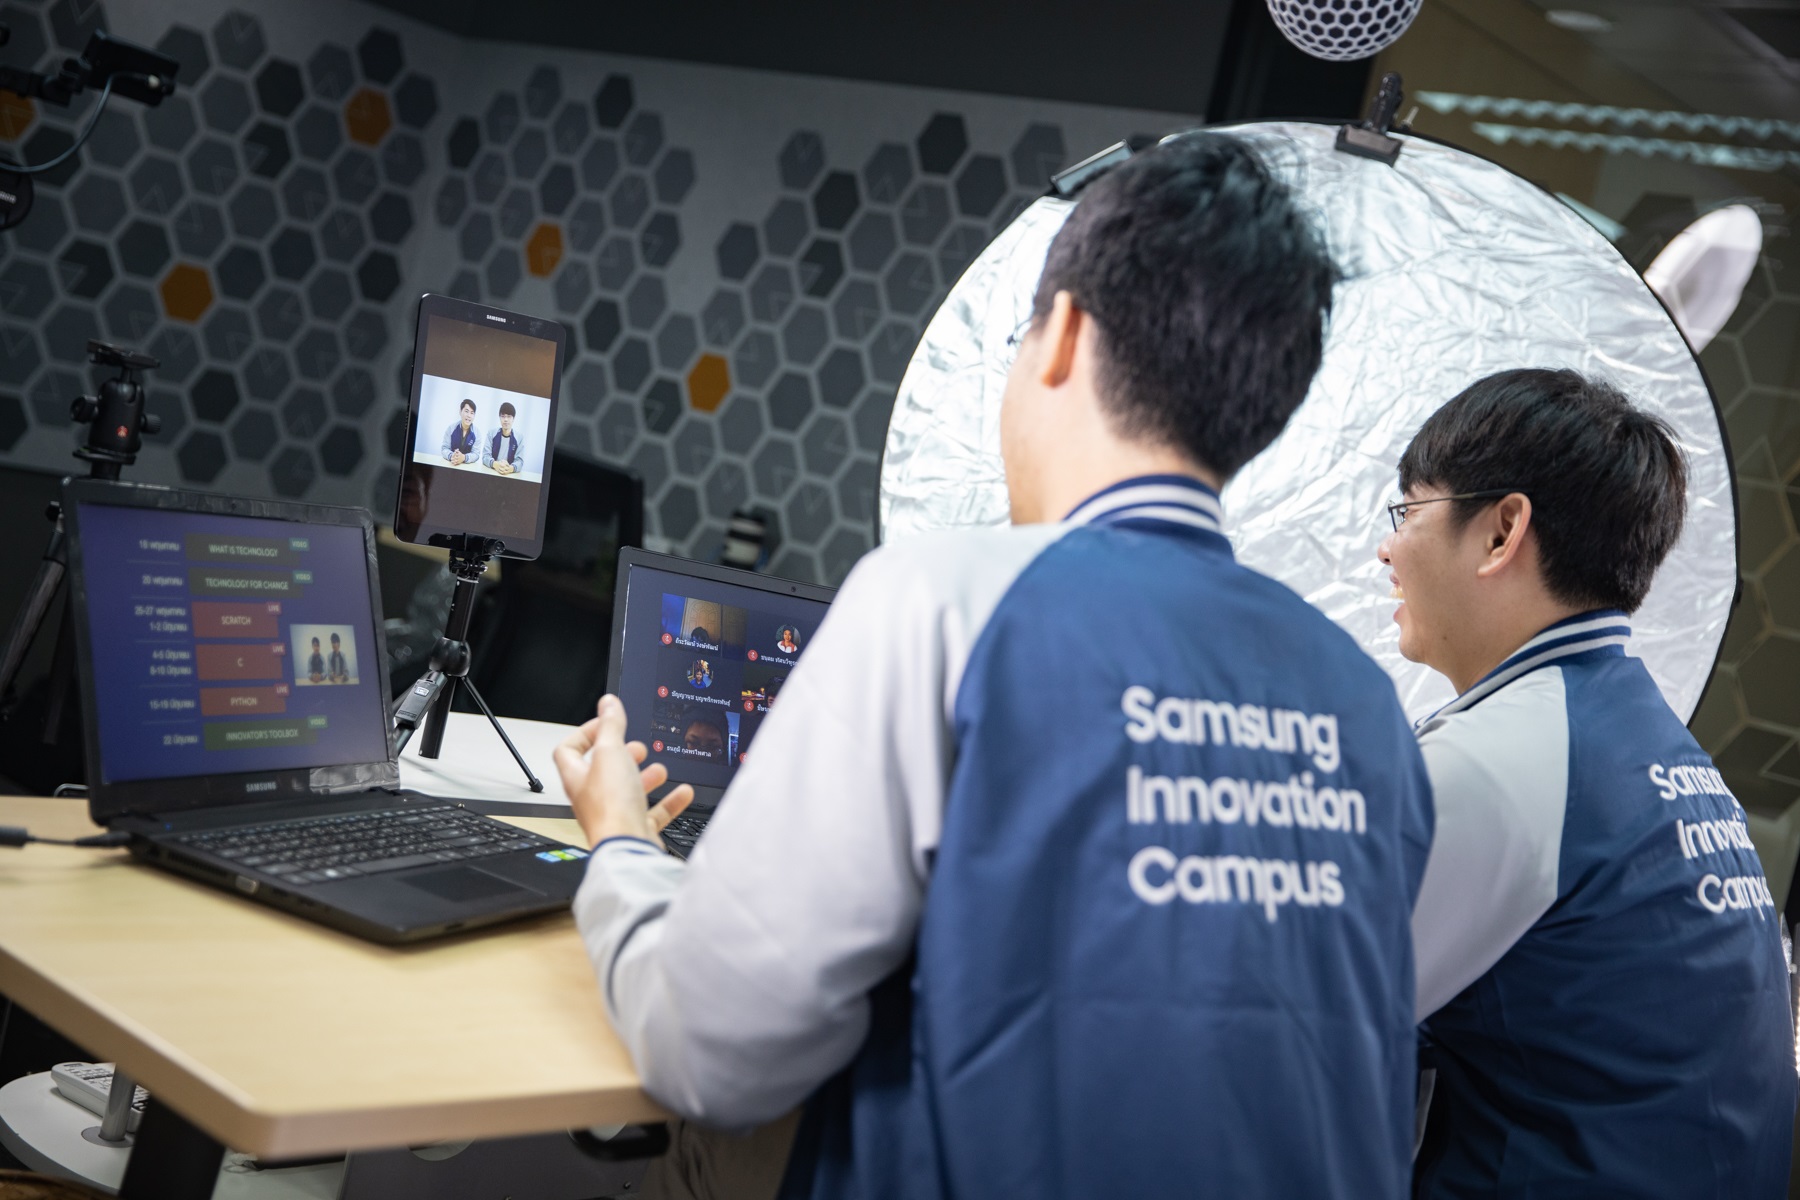 ???ซัมซุงลุยสอนโค้ดดิ้งผ่านโครงการ Samsung Innovation Campus เสริมพลังเด็กไทย ชูออนไลน์แพลตฟอร์ม รับสถานการณ์ปัจจุบัน